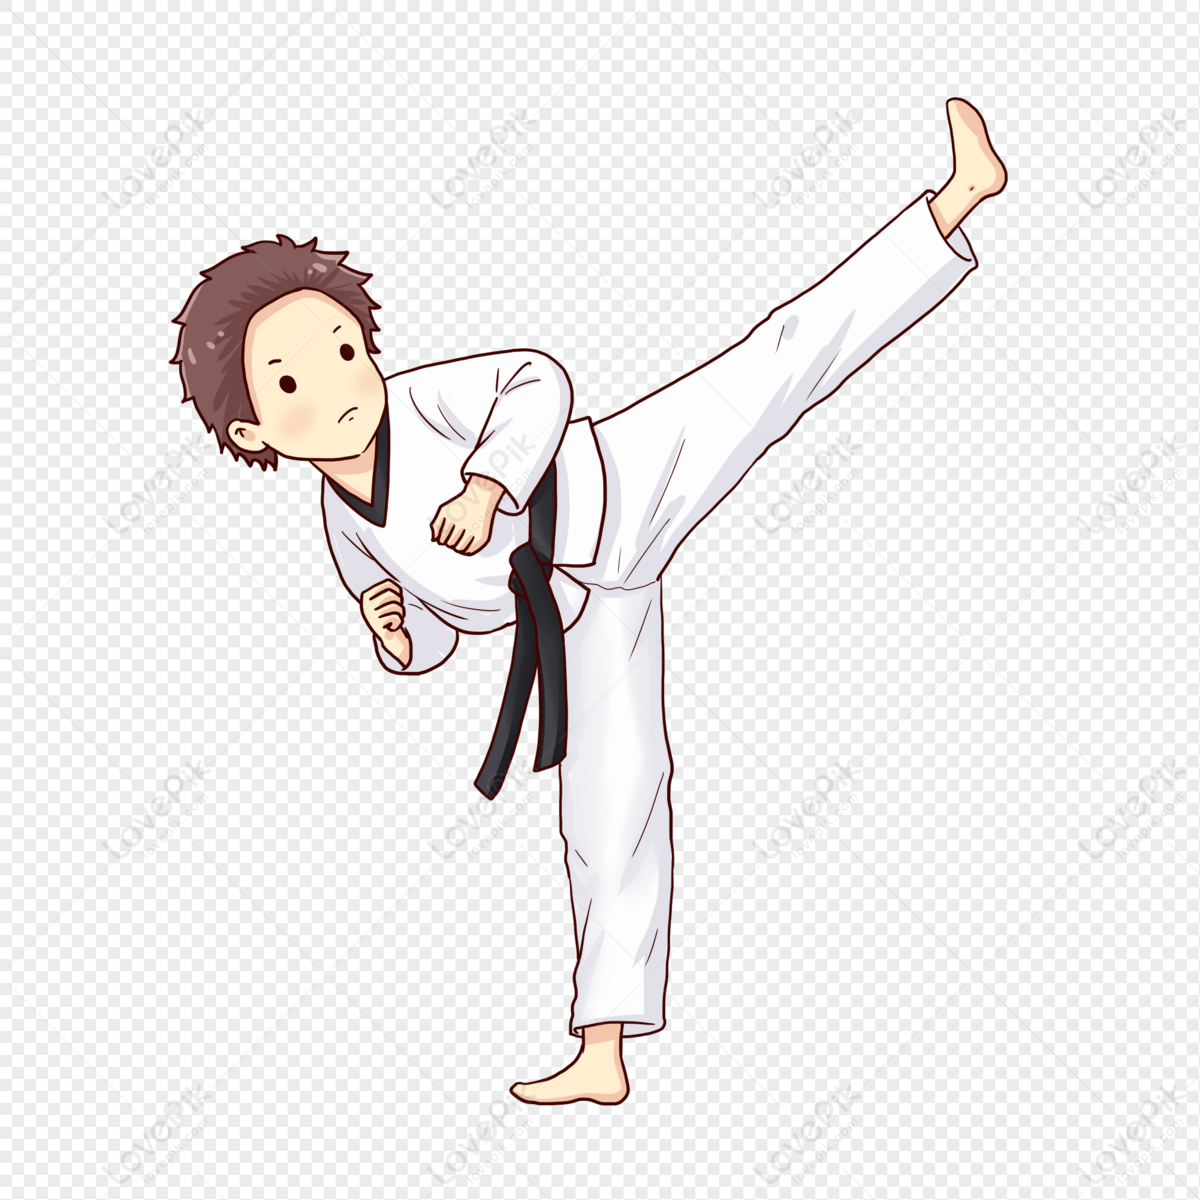 Nền Giáo Dục Karate Taekwondo đẹp Trai Hình Chụp Và Hình ảnh Để Tải Về Miễn  Phí - Pngtree